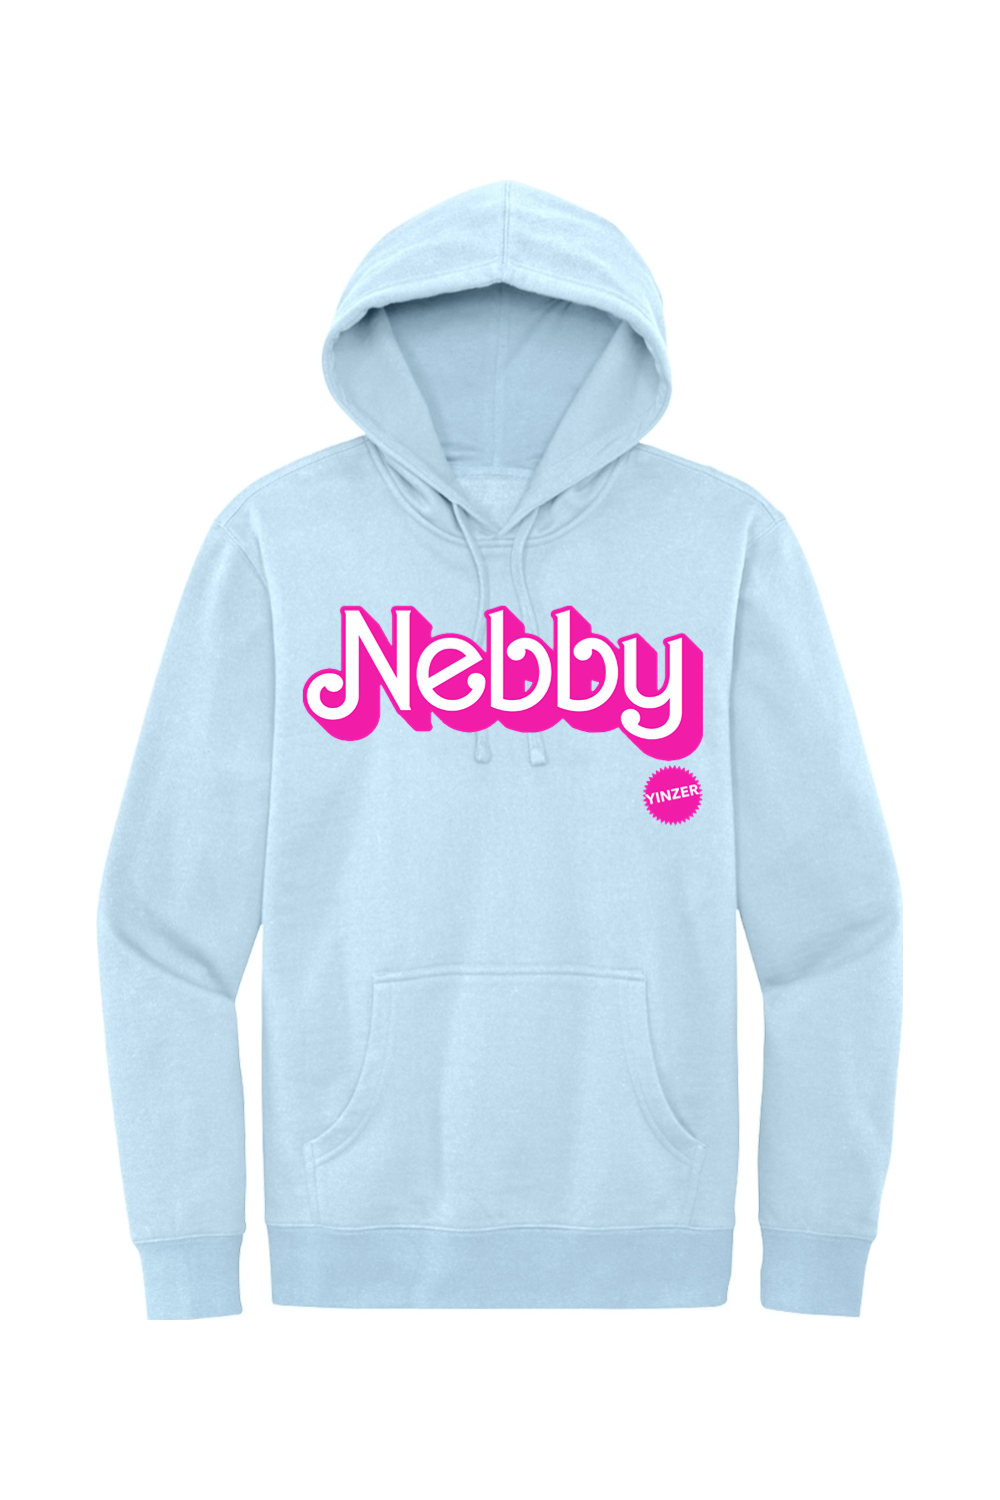 Malibu Nebby - Fleece Hoodie - Yinzylvania